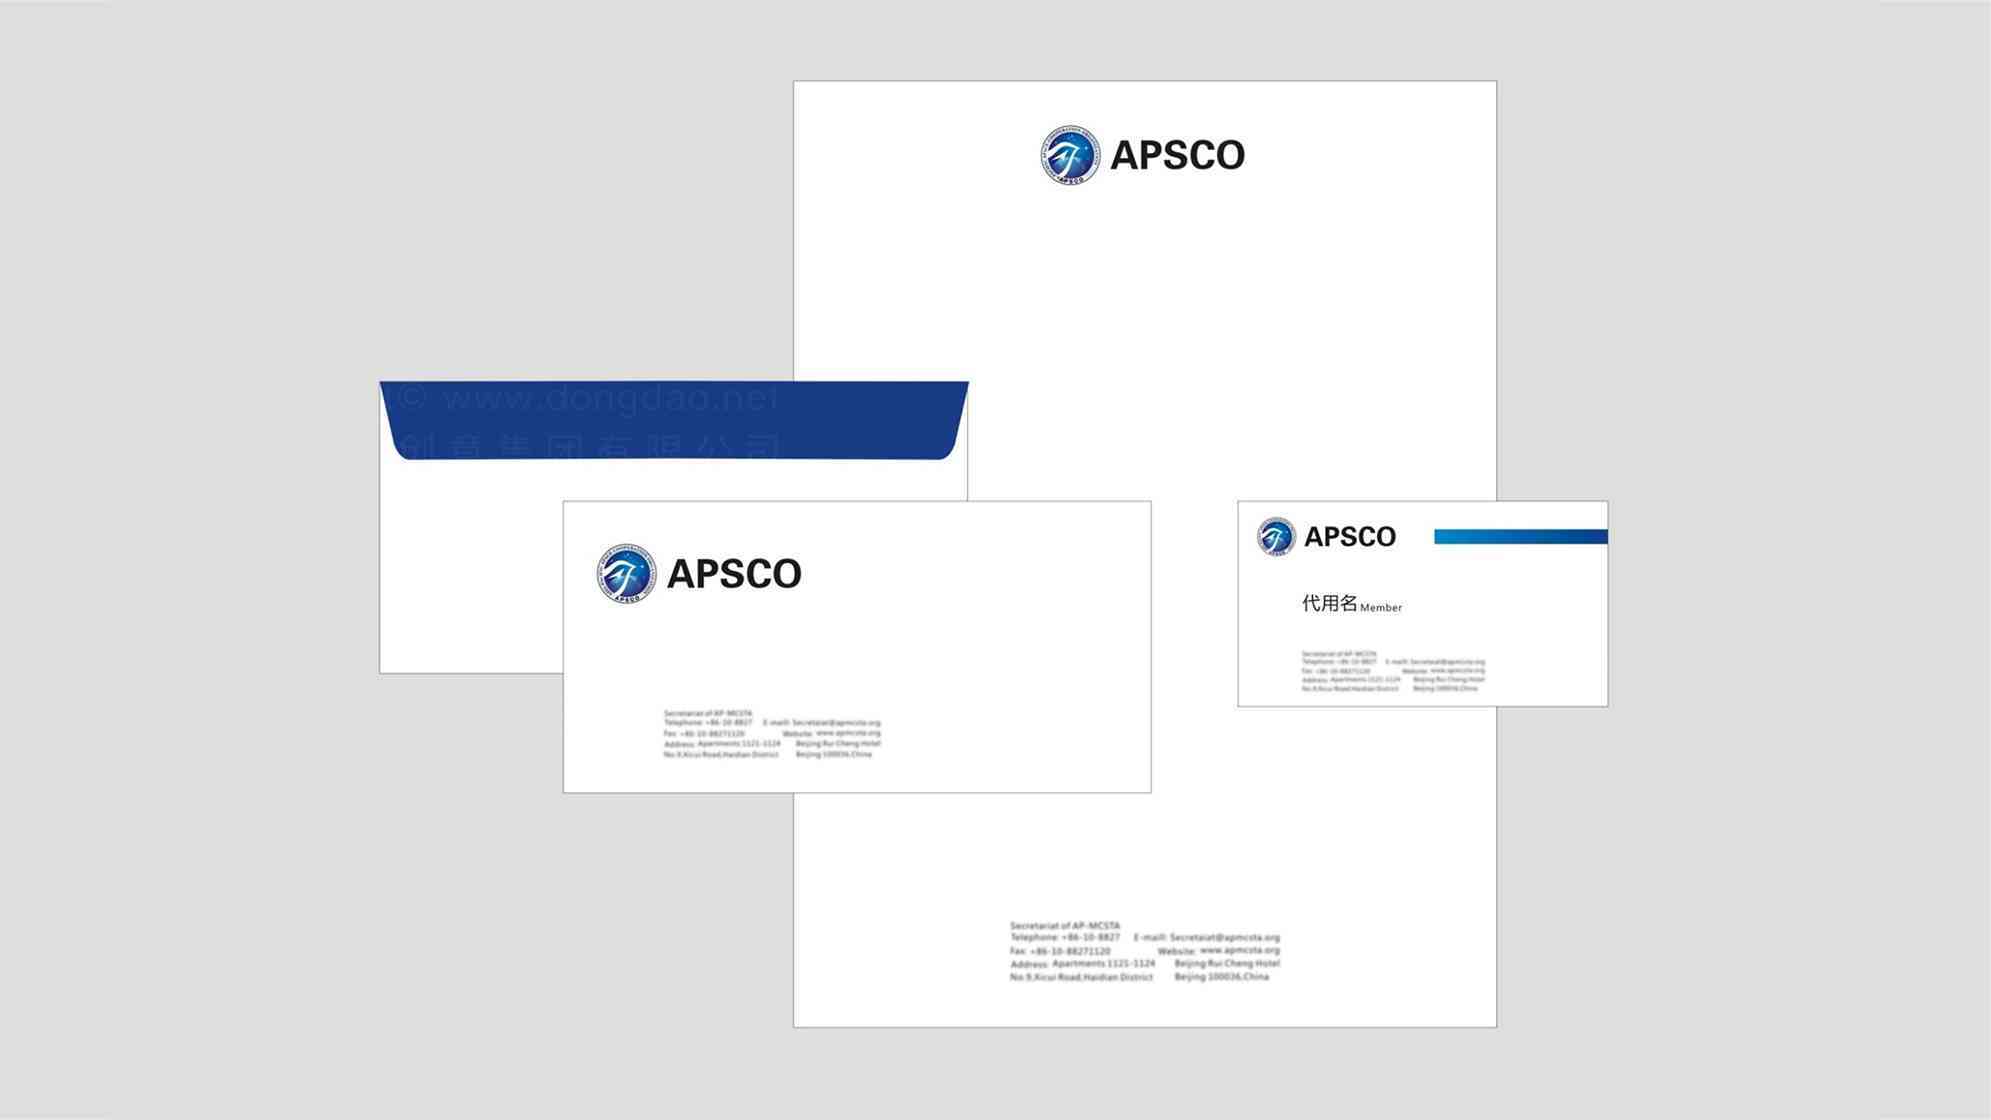 亚太空间合作组织机构logo设计图片素材